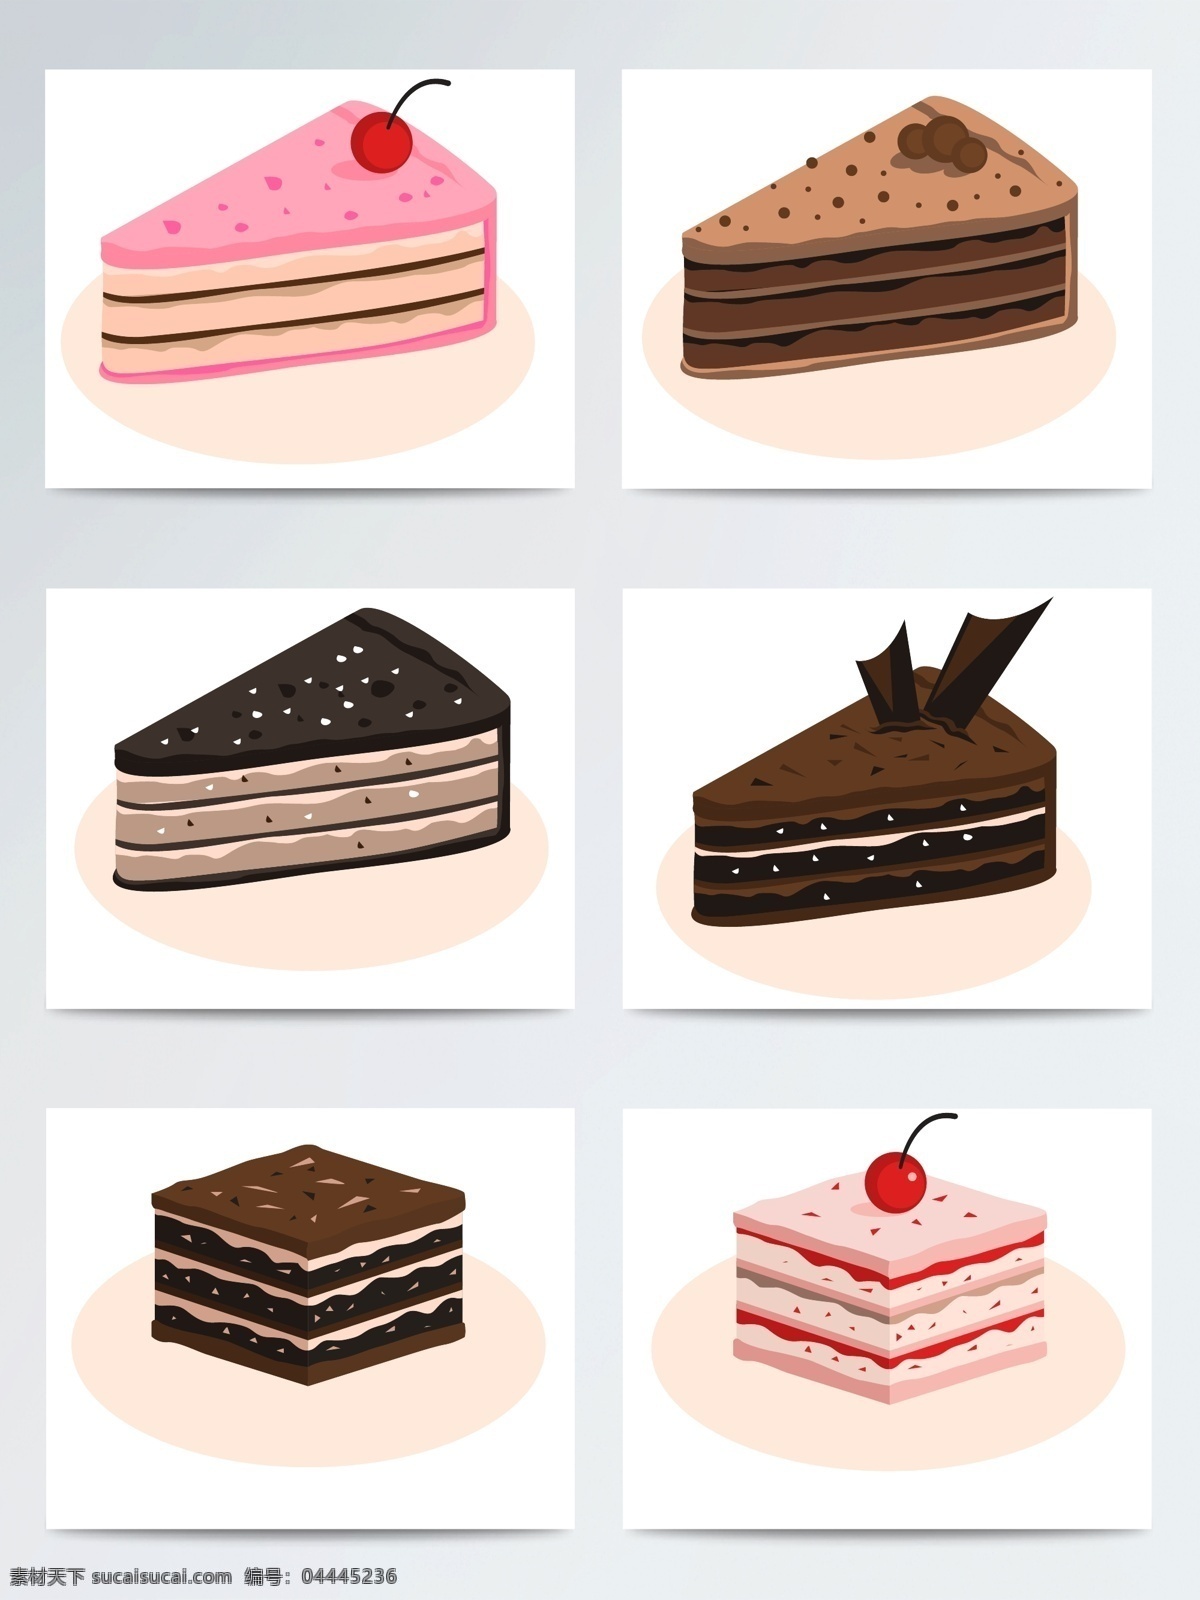 手绘 蛋糕 矢量 矢量素材 食物 甜品 草莓 手绘蛋糕 ai素材 手绘插画 手绘甜品 甜点 巧克力 巧克力蛋糕 草莓蛋糕